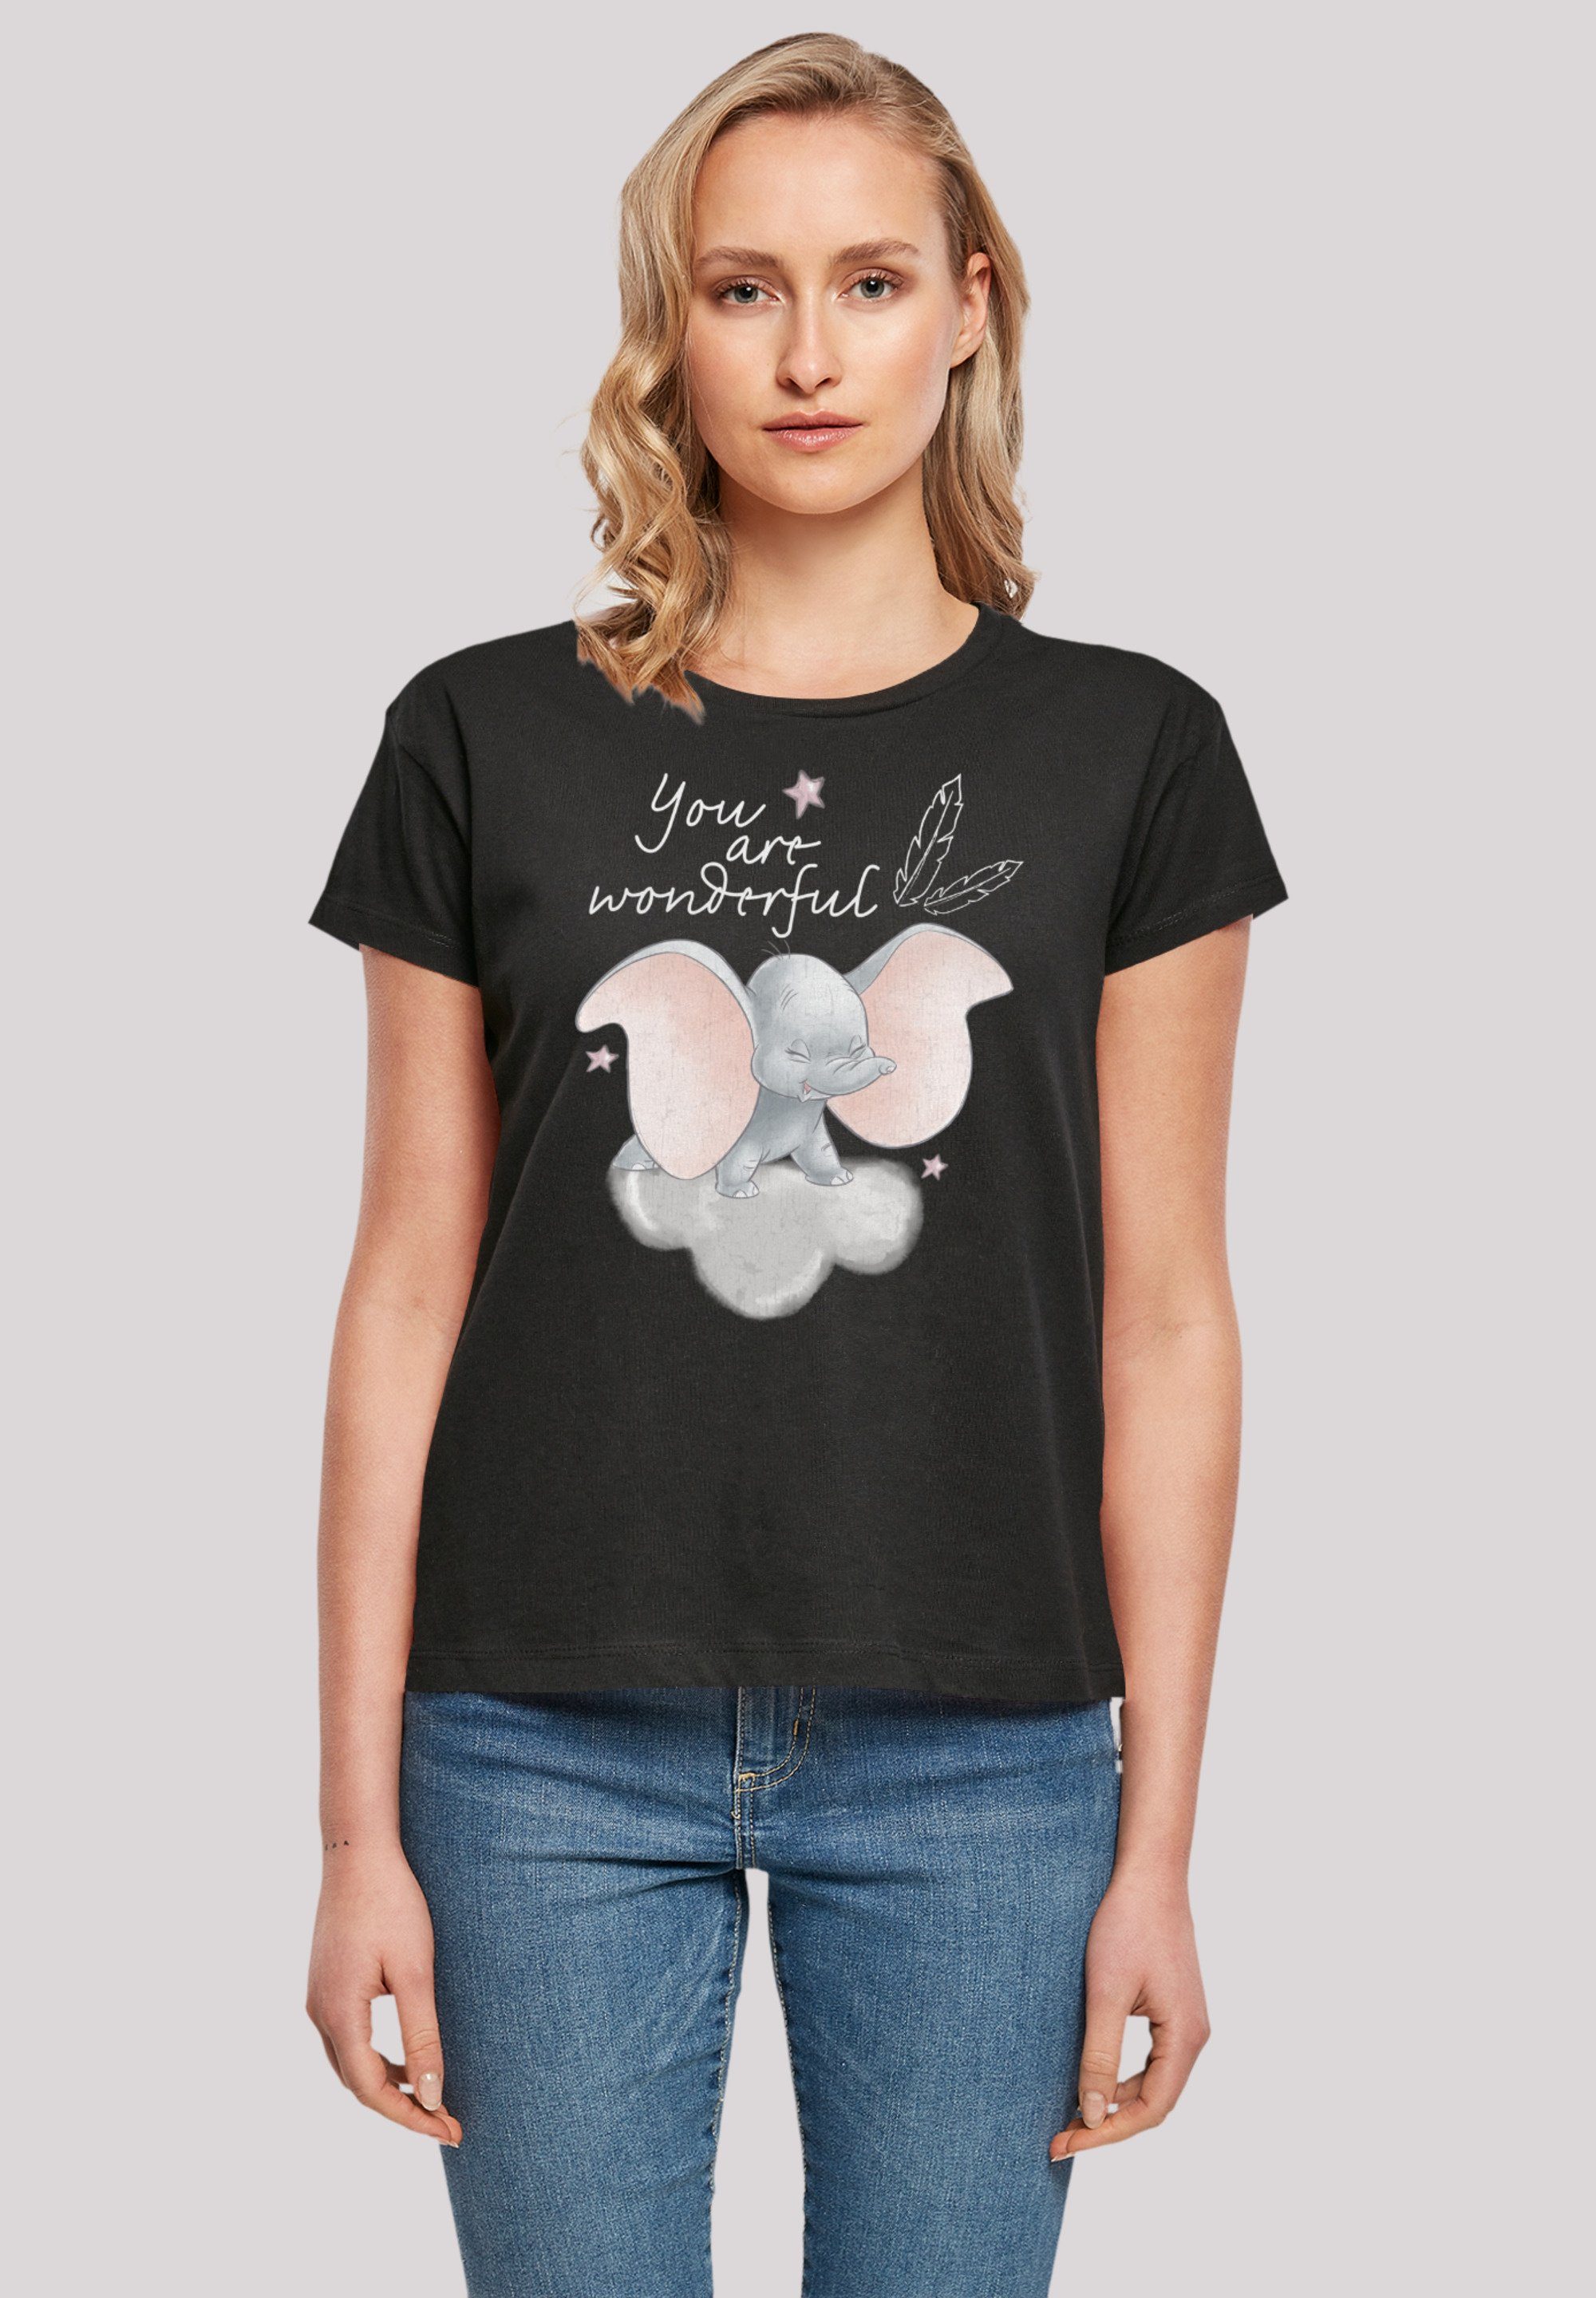 F4NT4STIC T-Shirt Verarbeitung und Perfekte Premium hochwertige Disney Dumbo You Passform Qualität, Wonderful Are